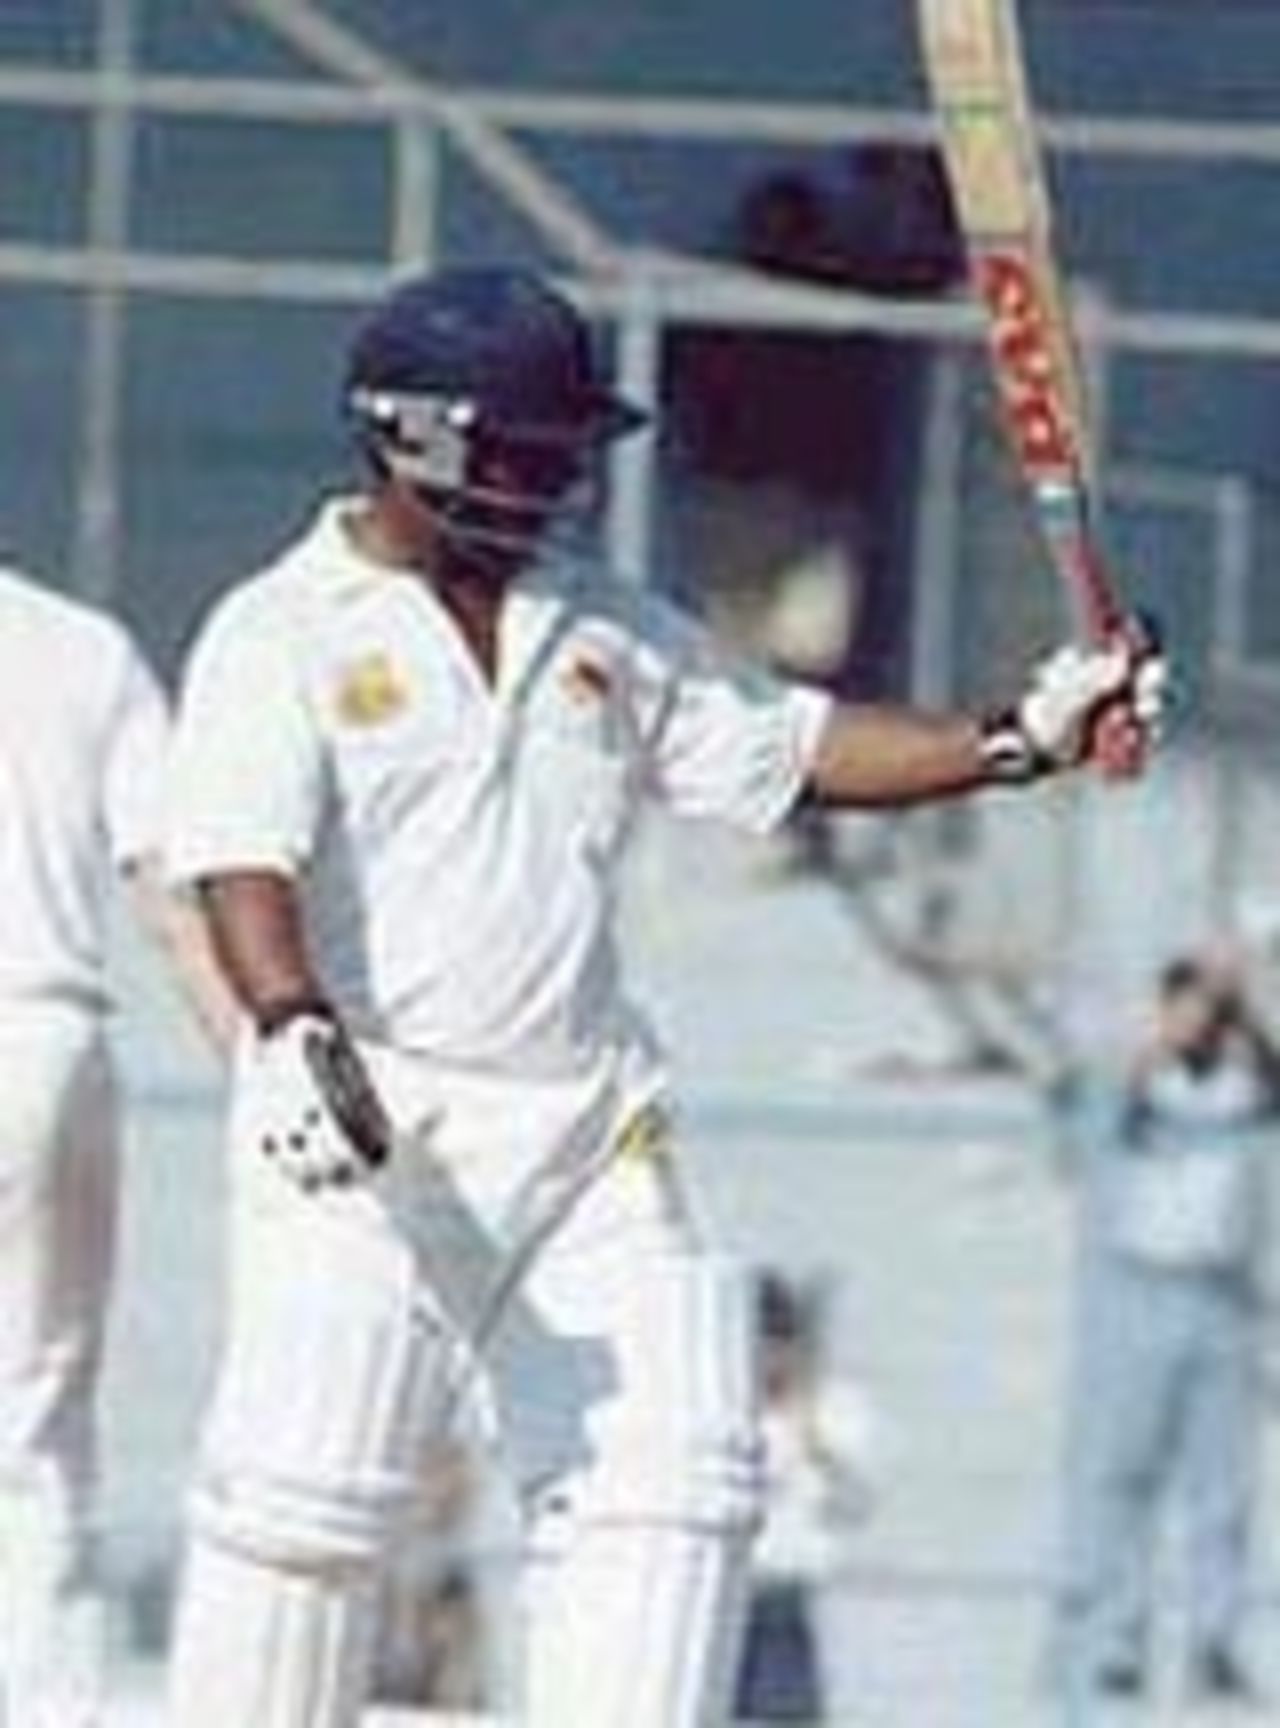 Ramesh Powar acknowledges the cheers on reaching his fifty. Australia in India, 2000/01, Mumbai v Australians, Brabourne Stadium, Mumbai, 22-24 February 2001 (Day 1).